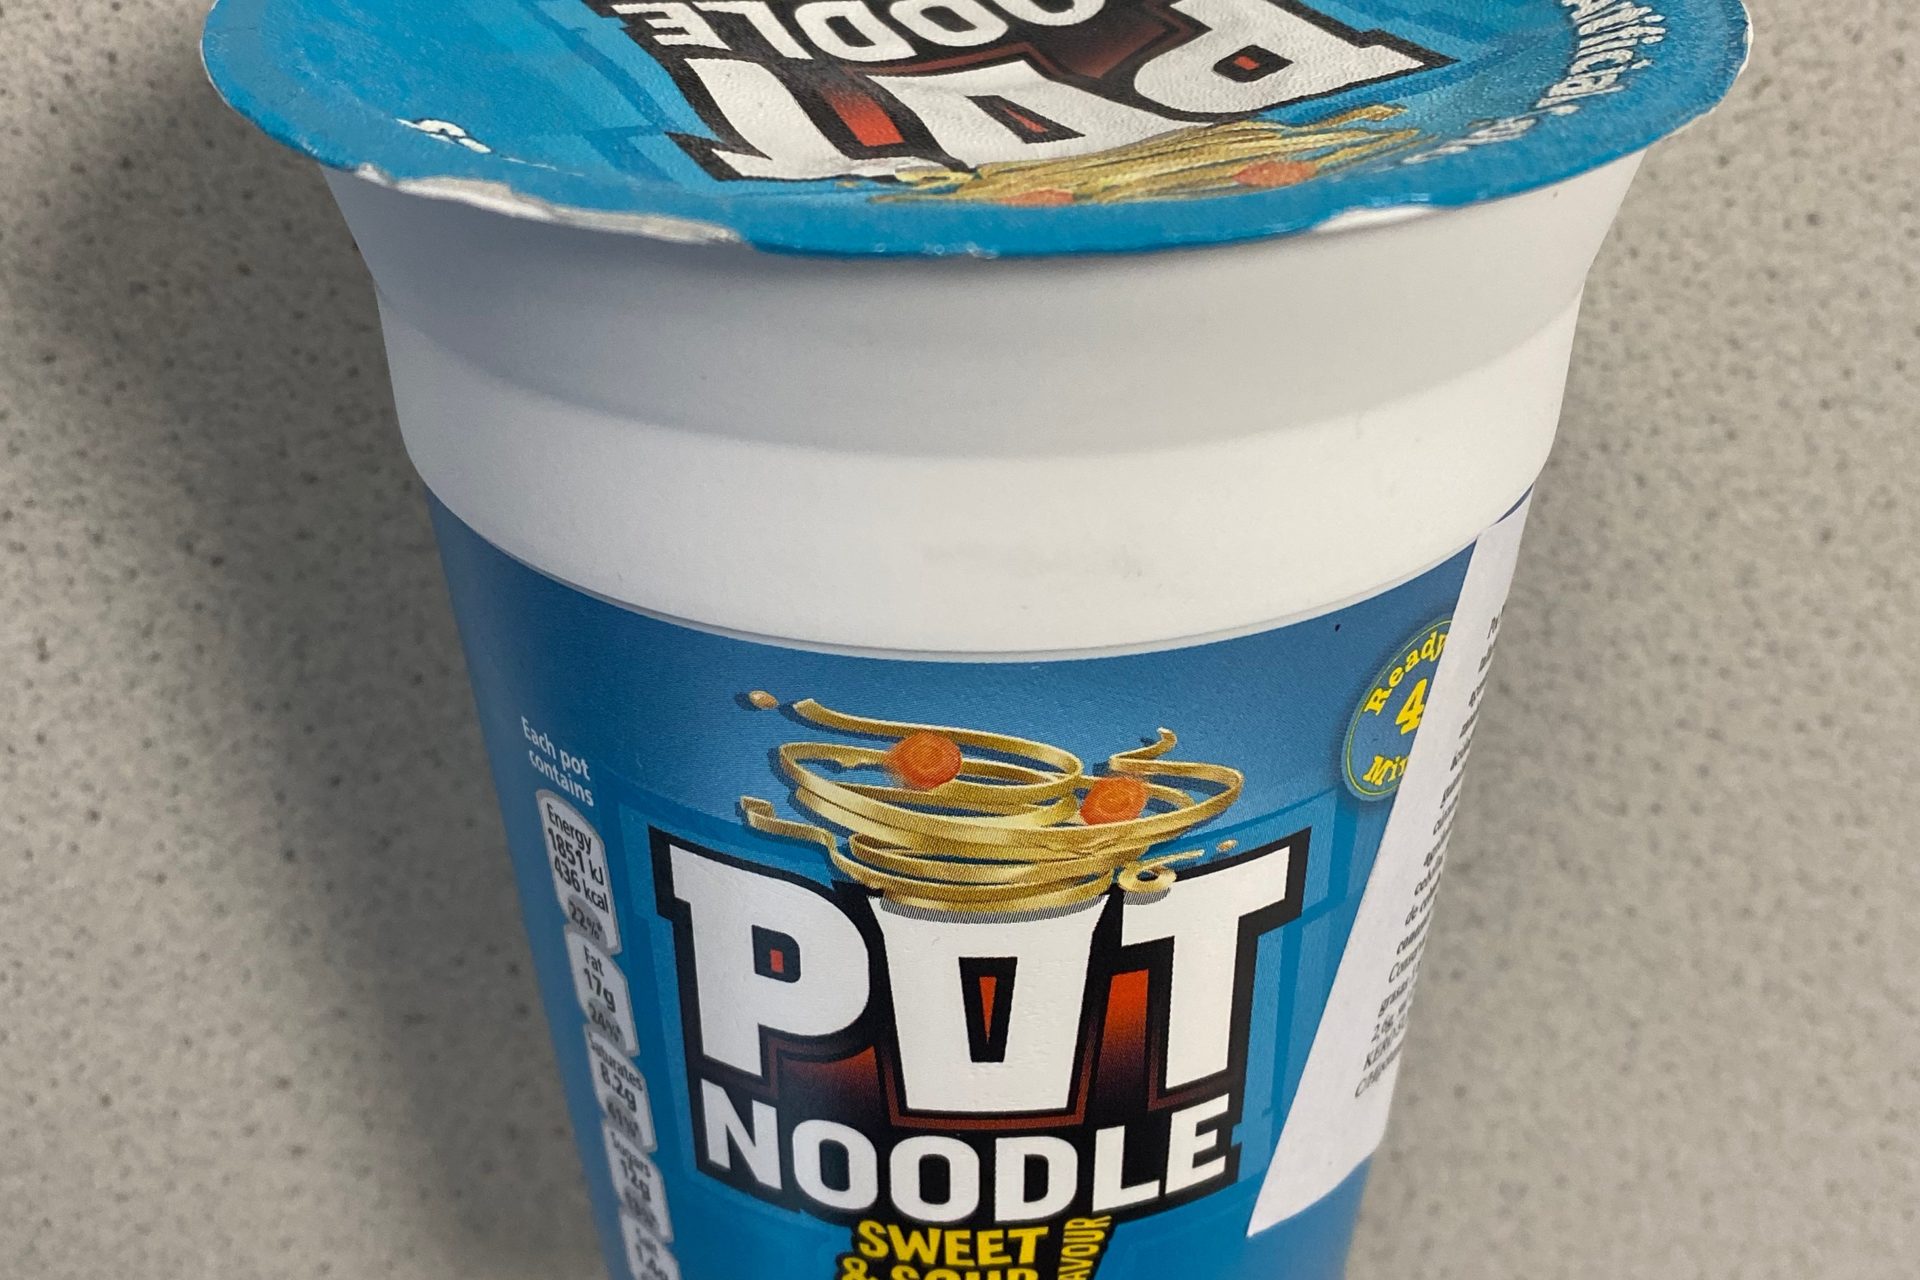 #1704: Pot Noodle "Sweet & Sour" Flavour